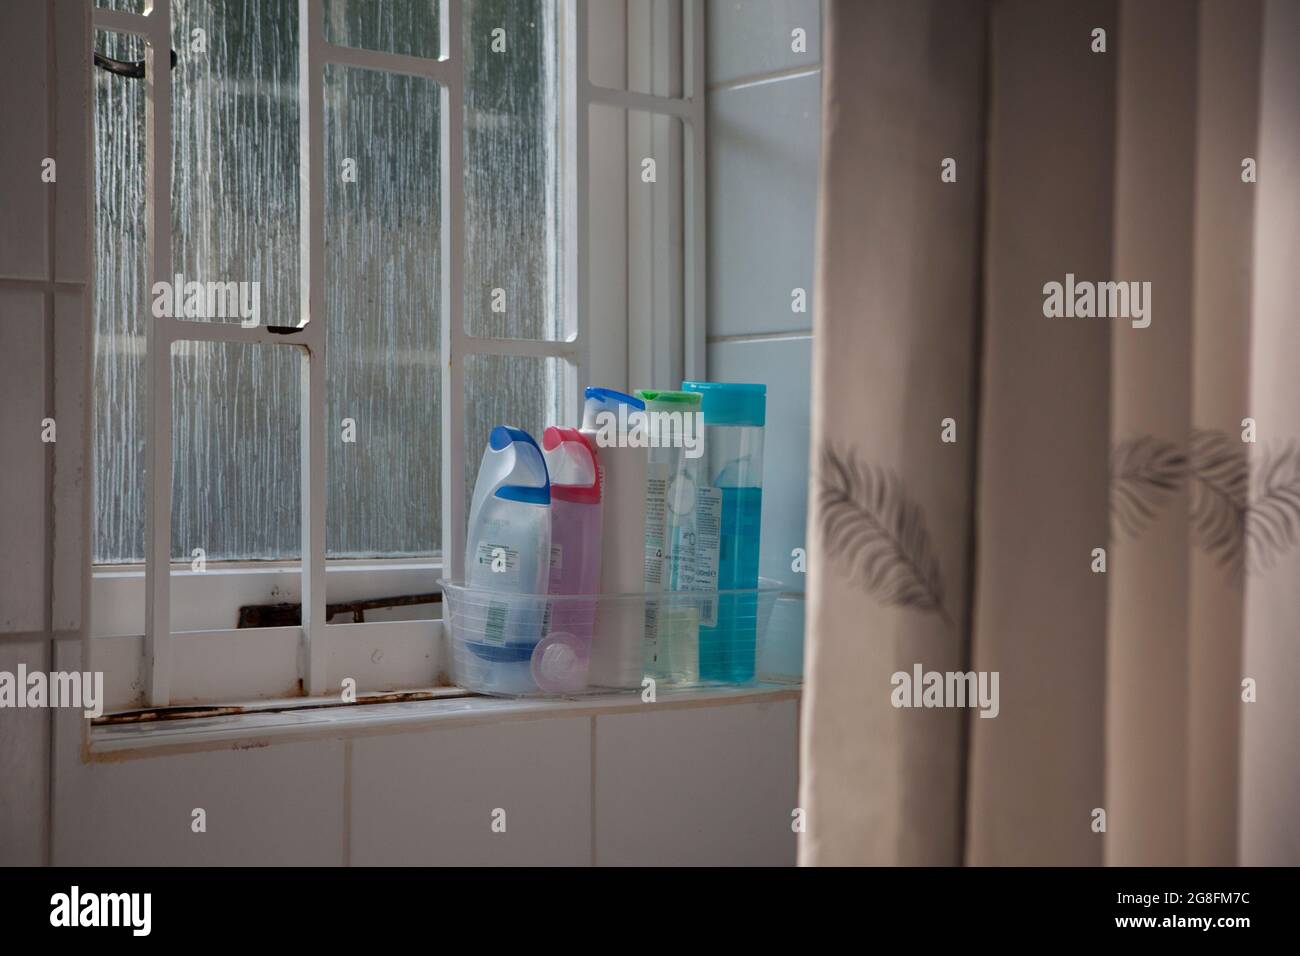 East Sussex, Reino Unido, 17 de julio de 2021: Botellas de plástico de gel de ducha en un alféizar junto a una cortina de ducha. La ventana de cristal esmerilado proporciona una luz suave Foto de stock